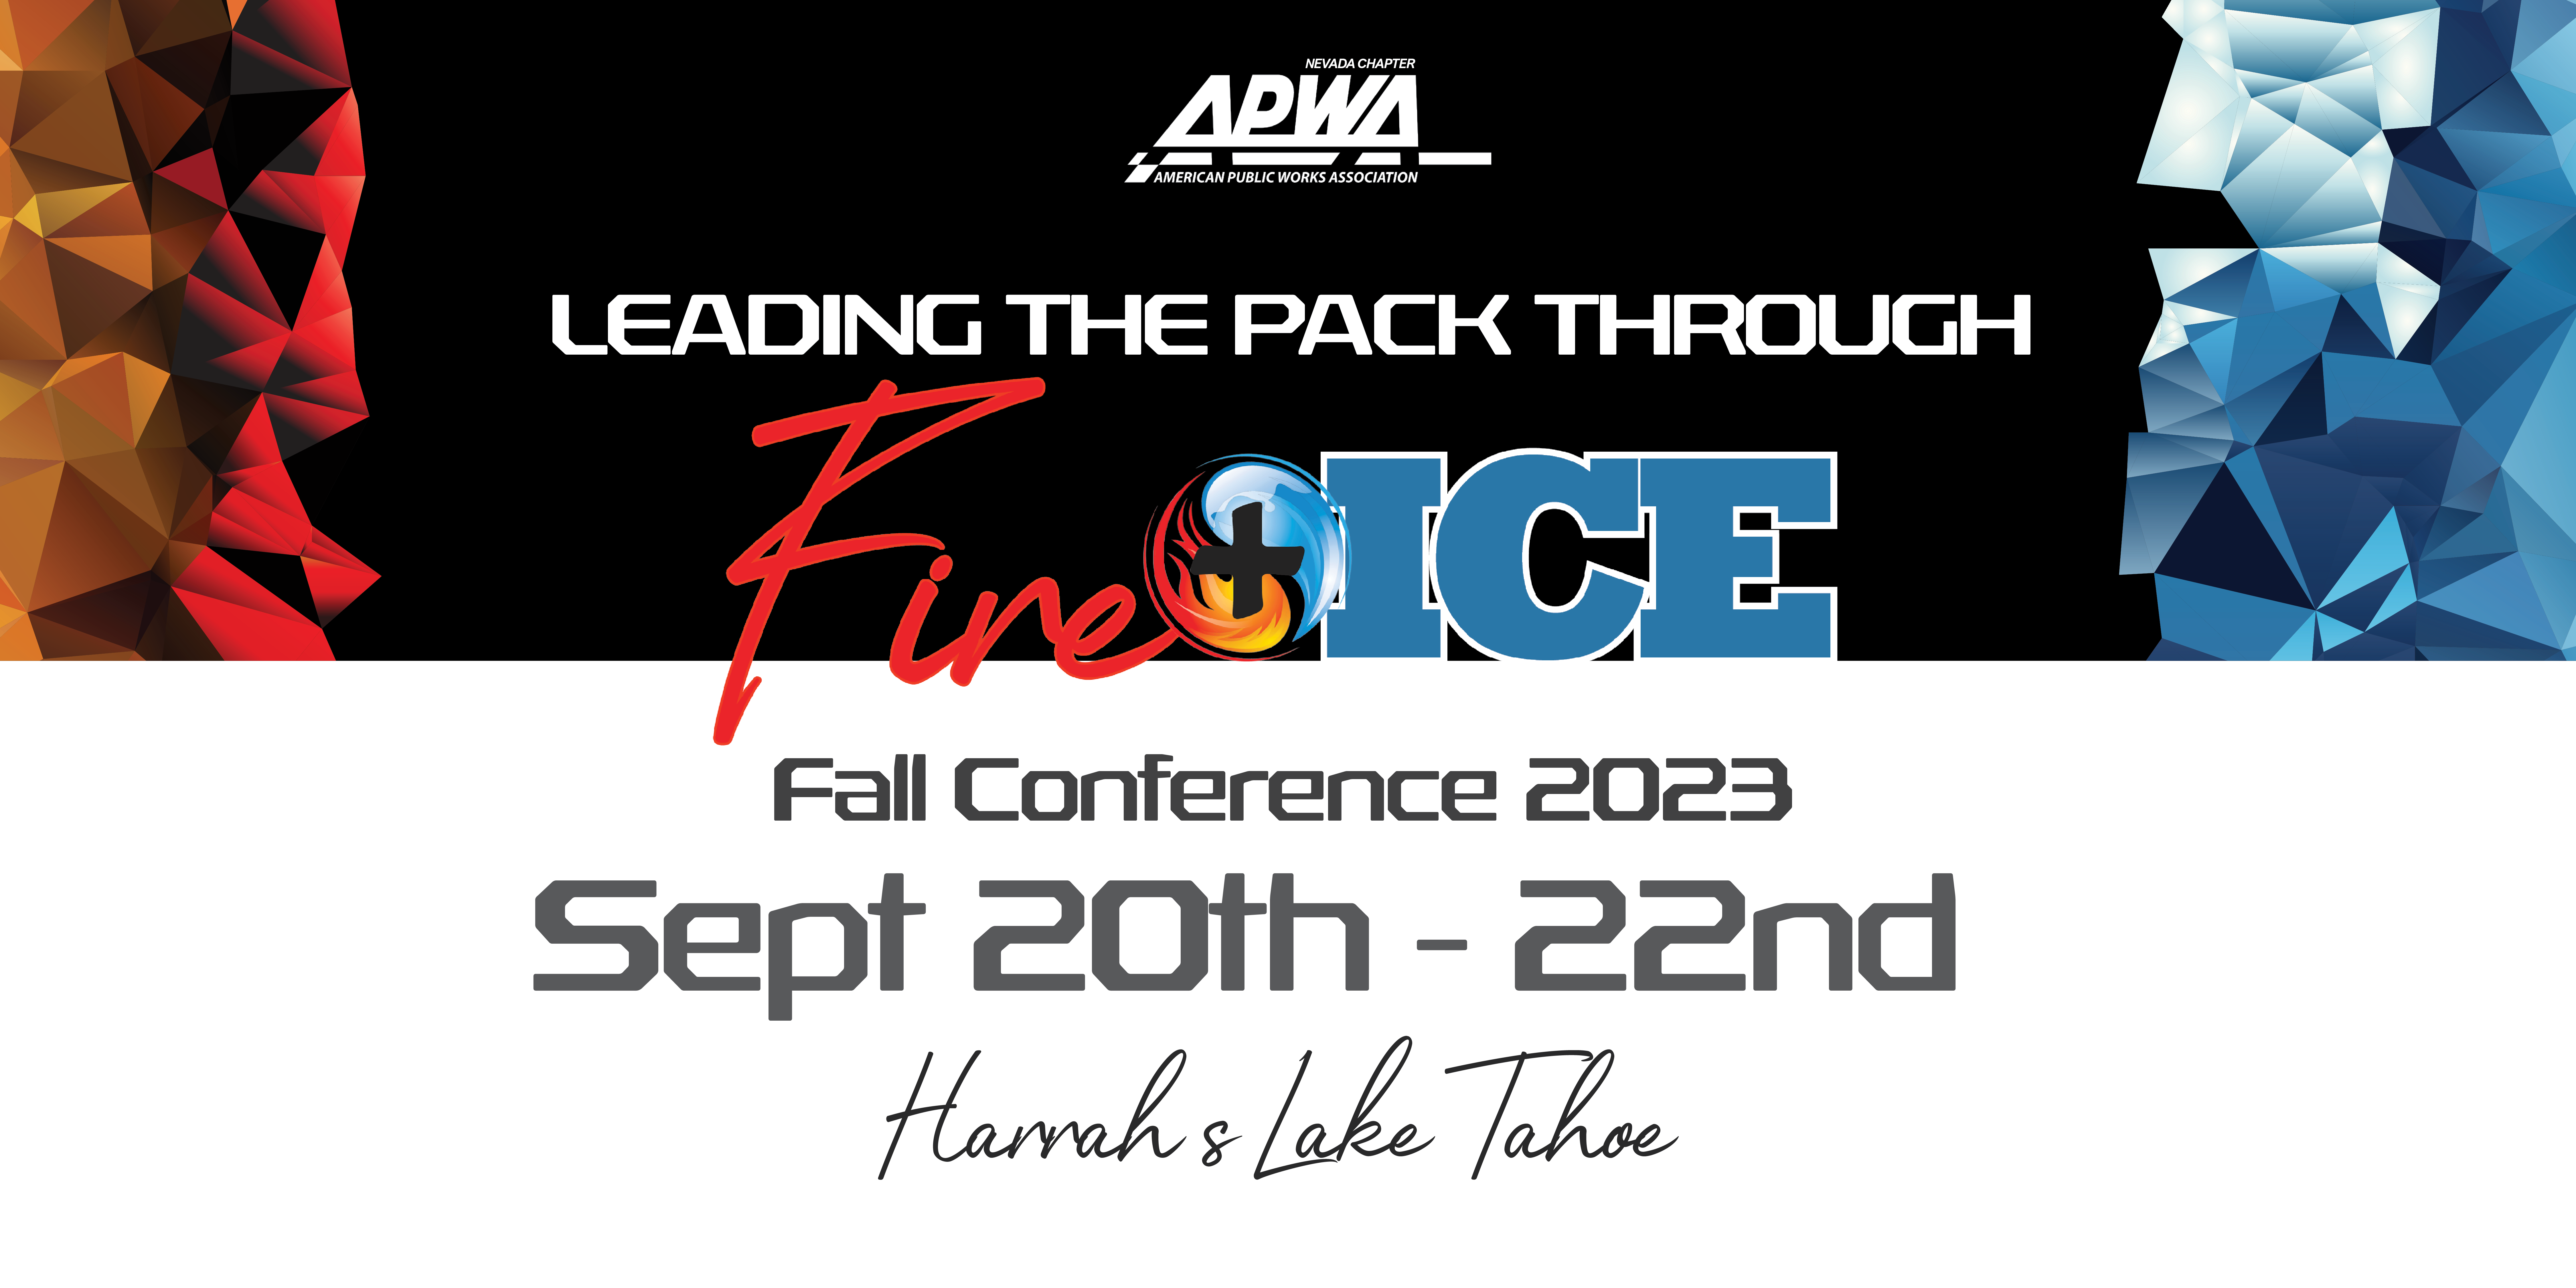 APWA Fall Conference 2023